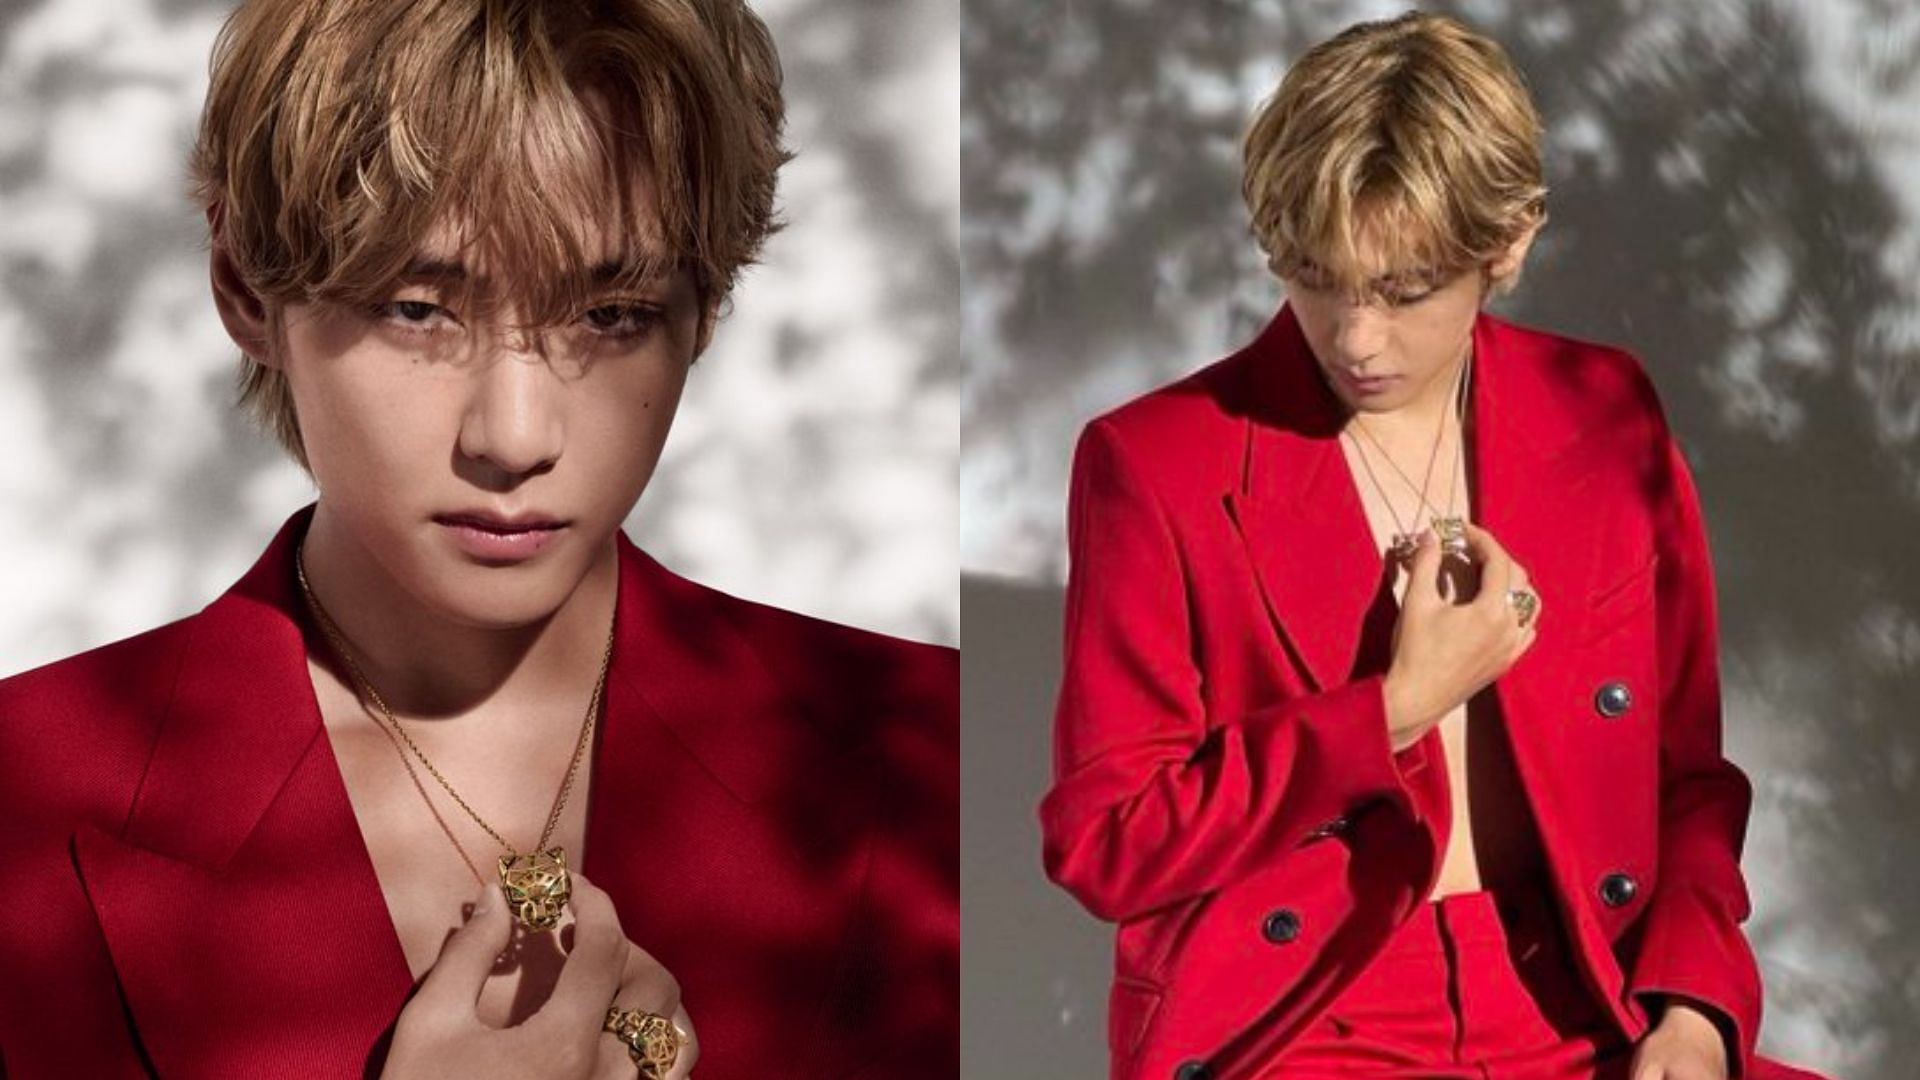 BTS' V Becomes Cartier's Newest Brand Ambassador